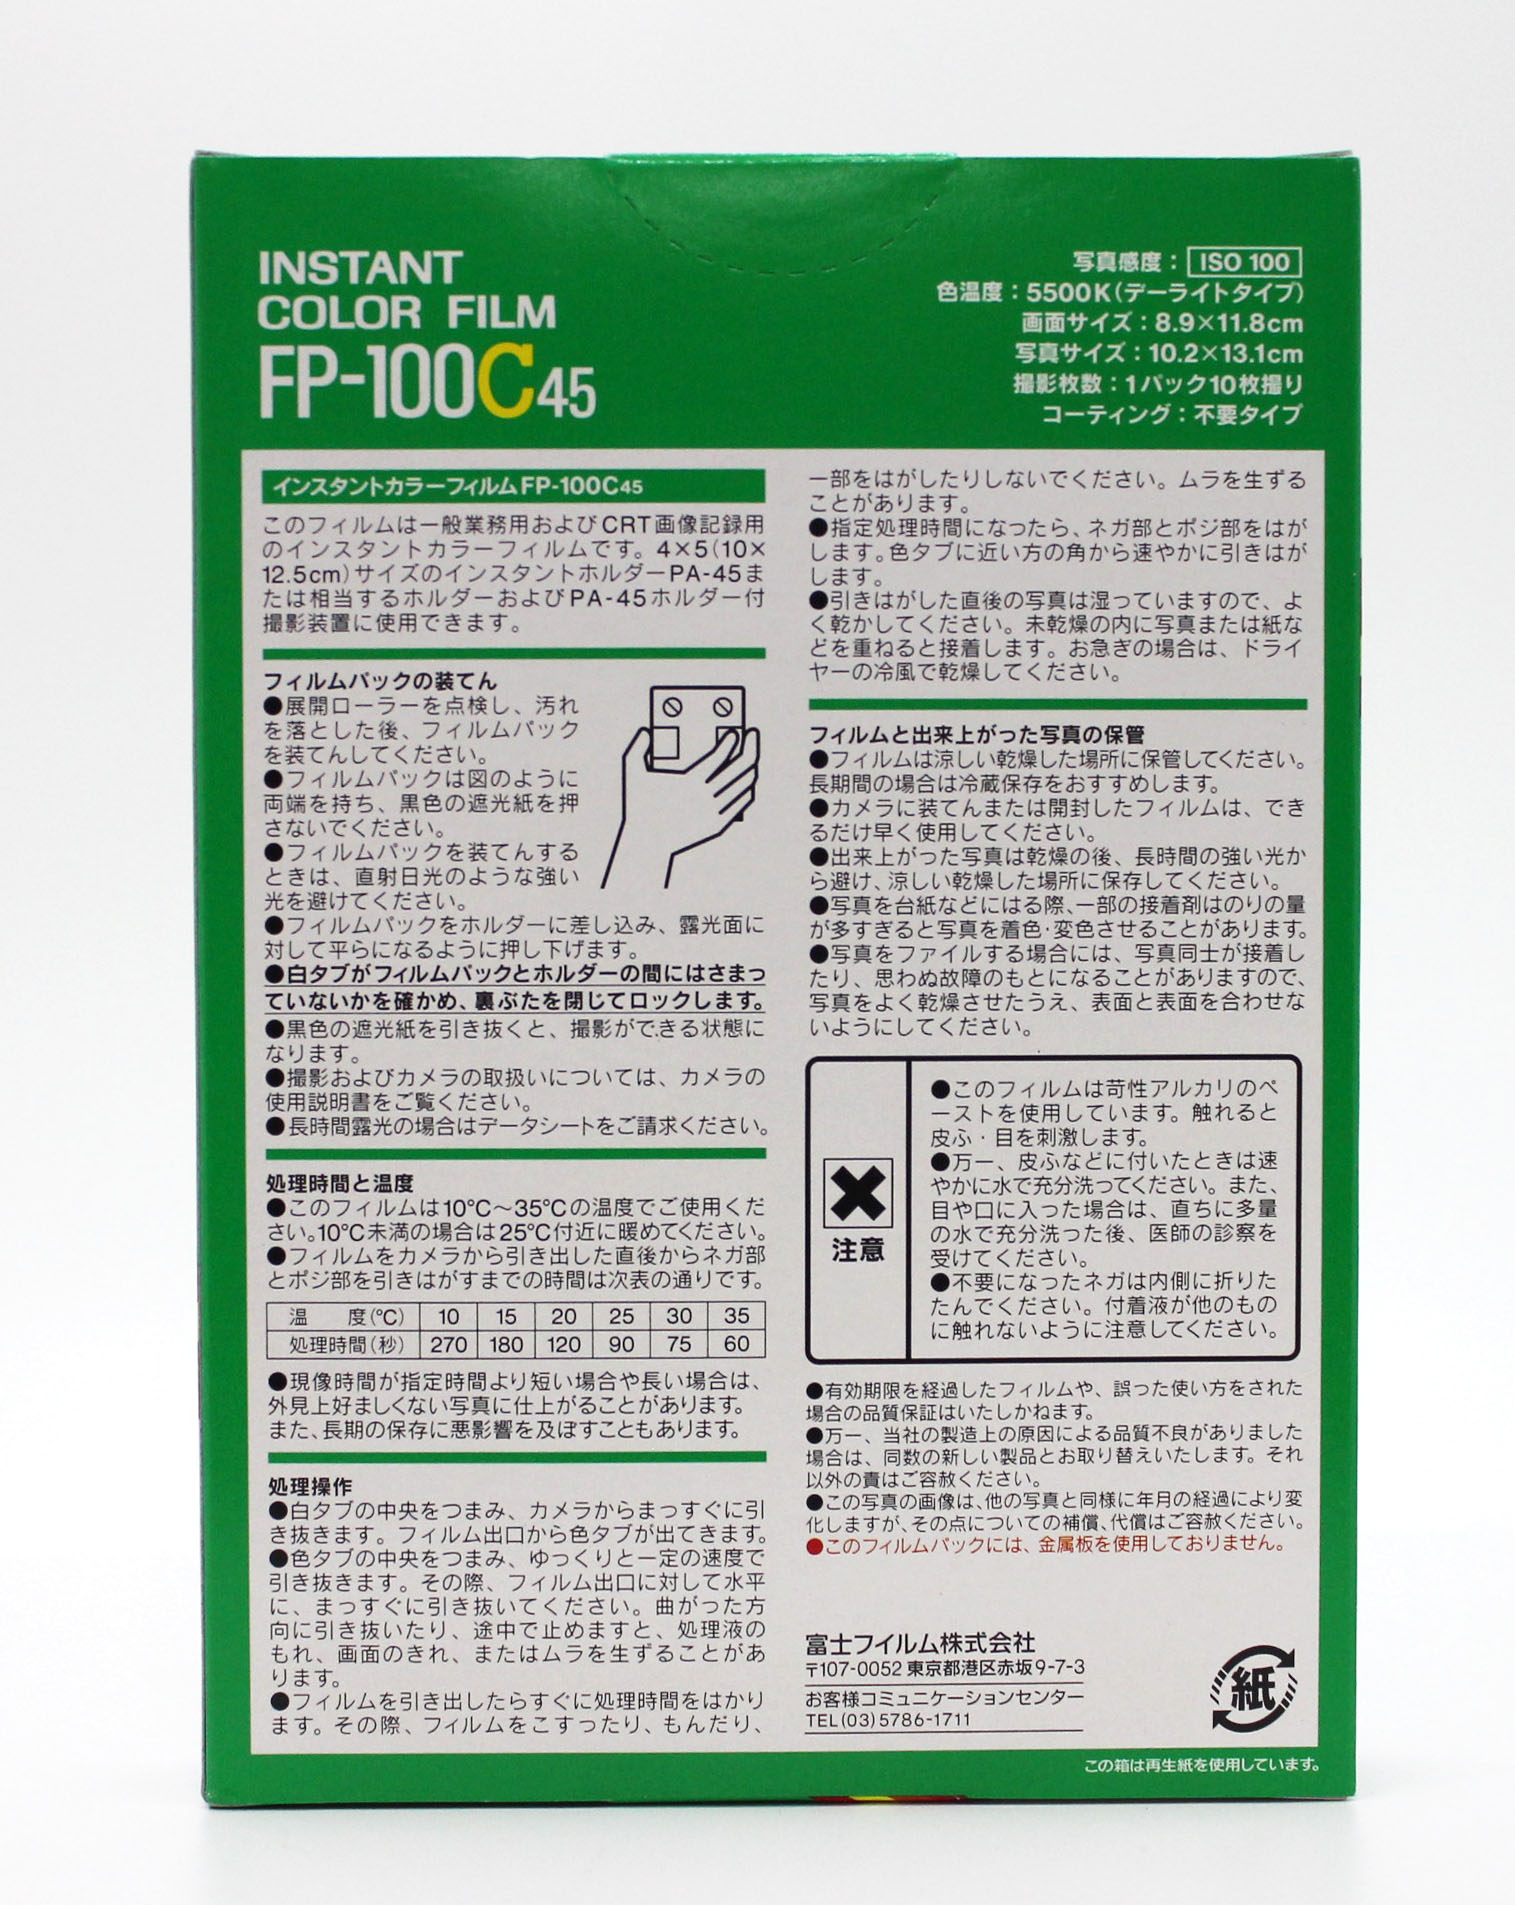  Fuji Fujifilm FP-100C45 4x5 8.9x11.8cm Instant Color Film (EXP 10/2009) Photo 2